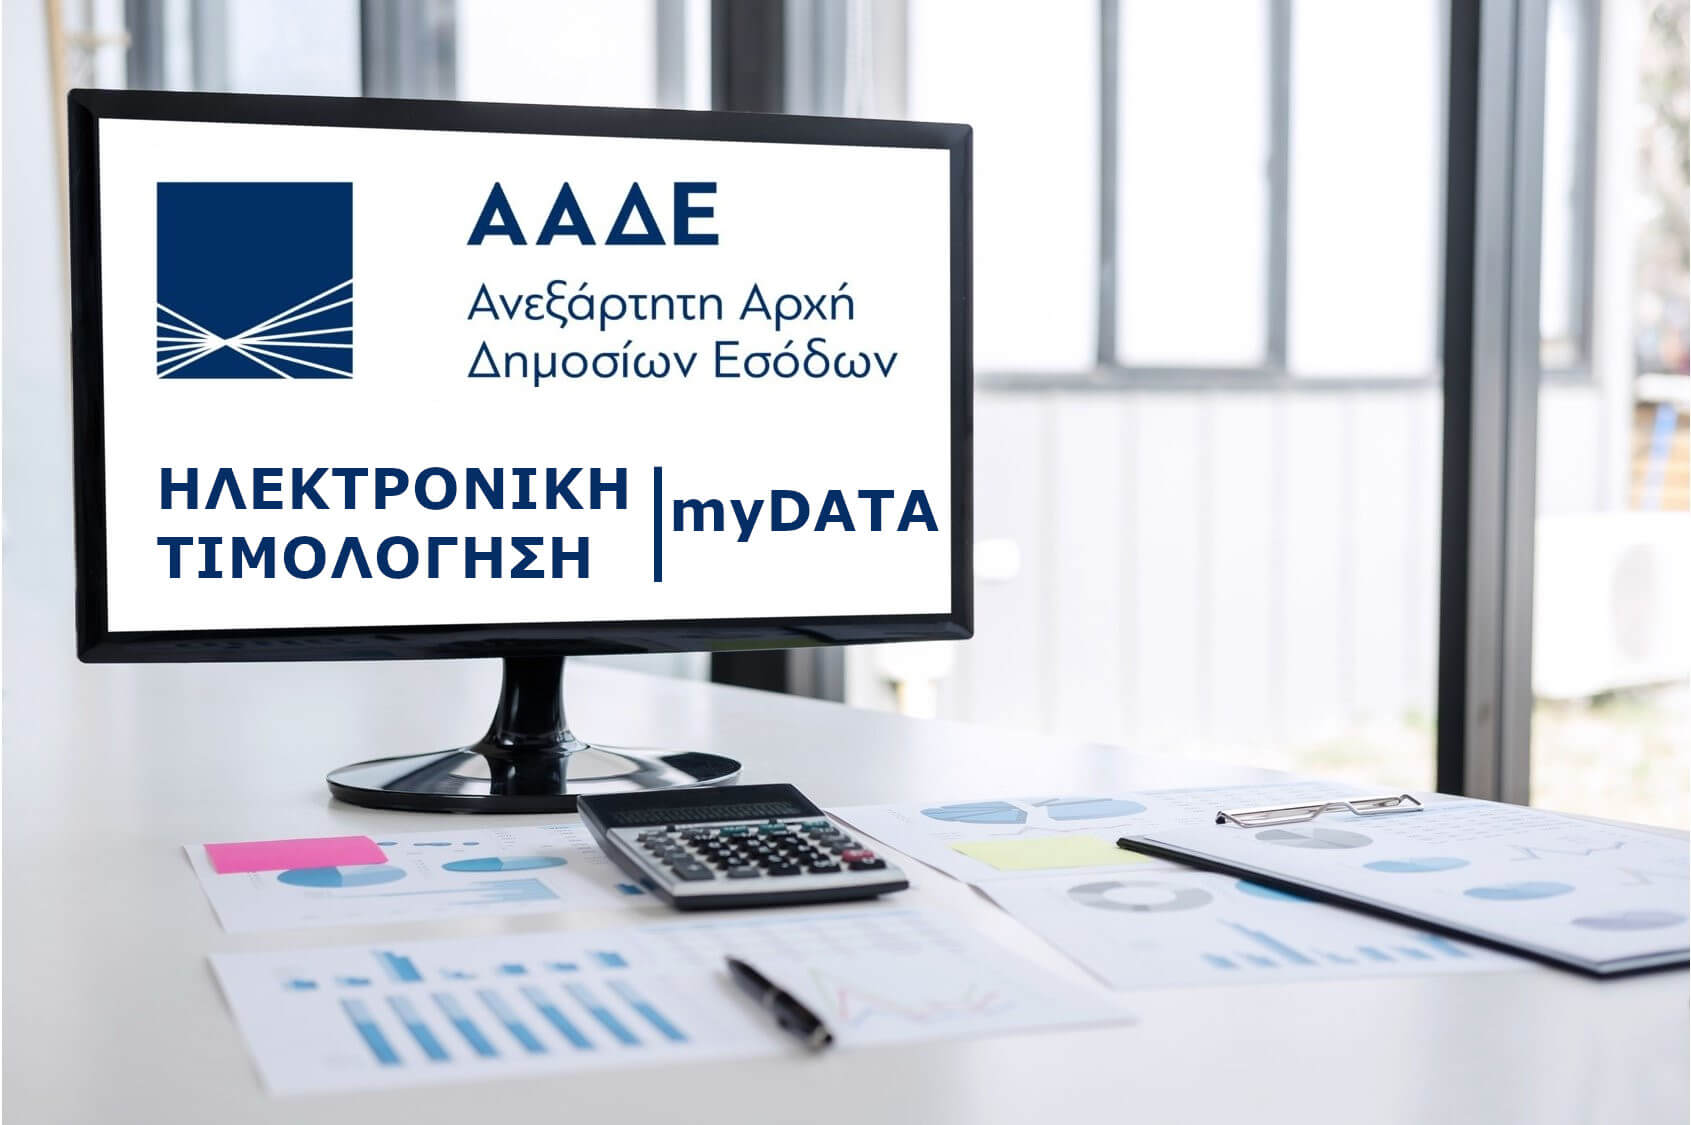 Διοικητικές κυρώσεις για τη διαβίβαση δεδομένων στην πλατφόρμα myDATA (Ε’ Μέρος)